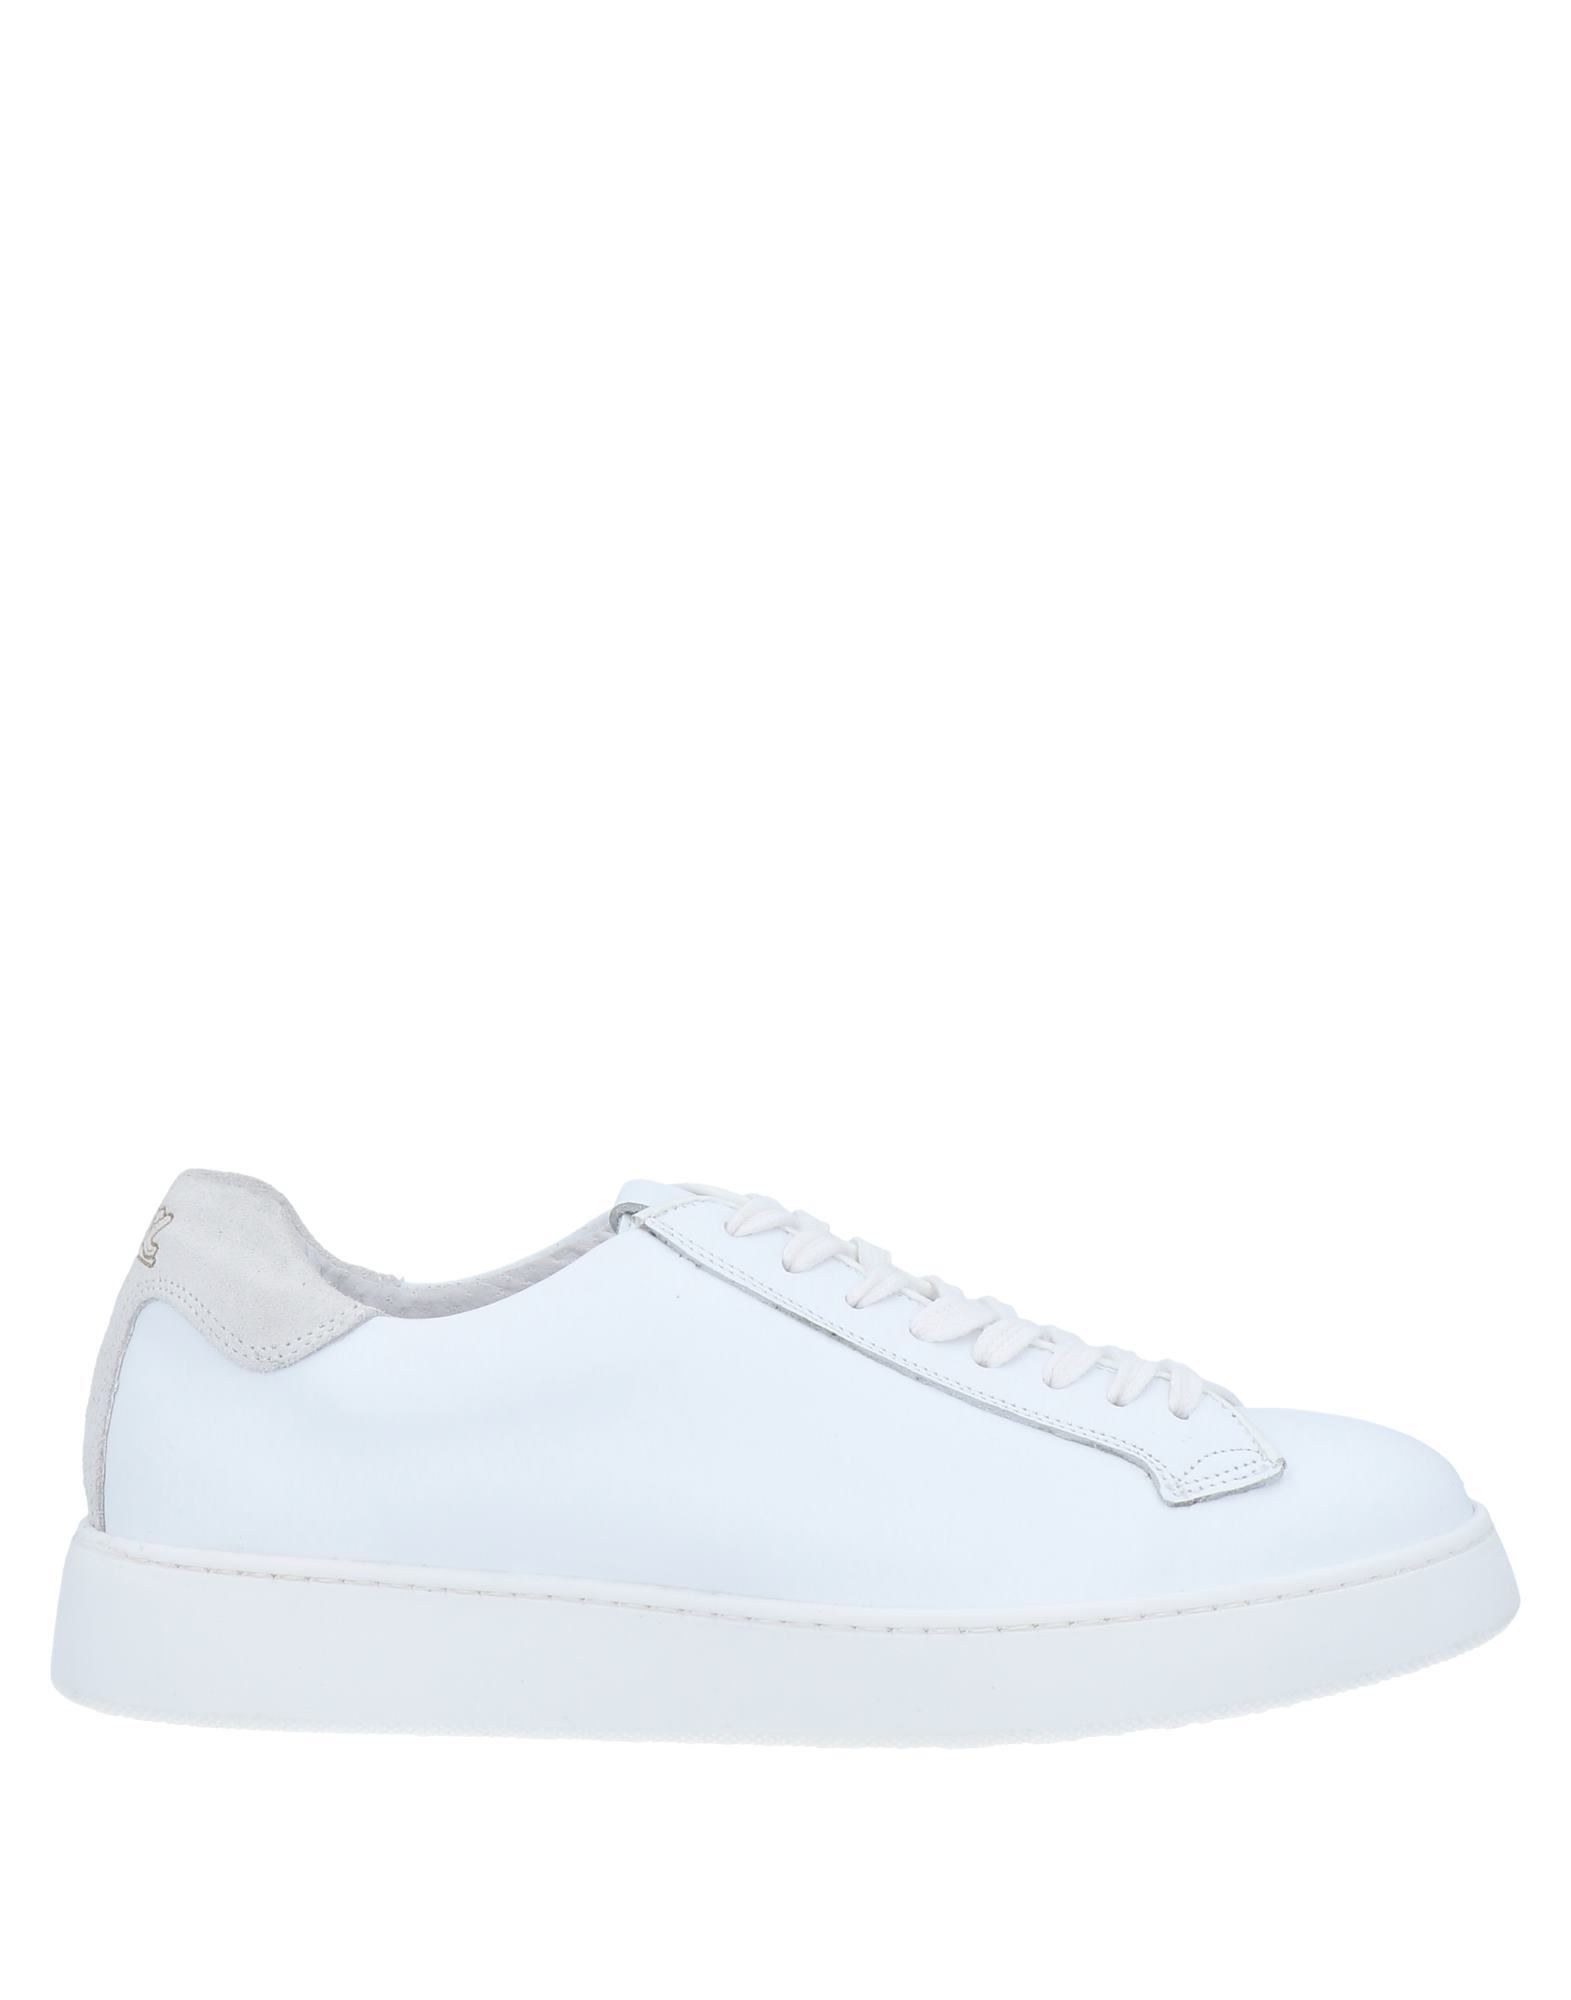 Barbati Sneakers In White